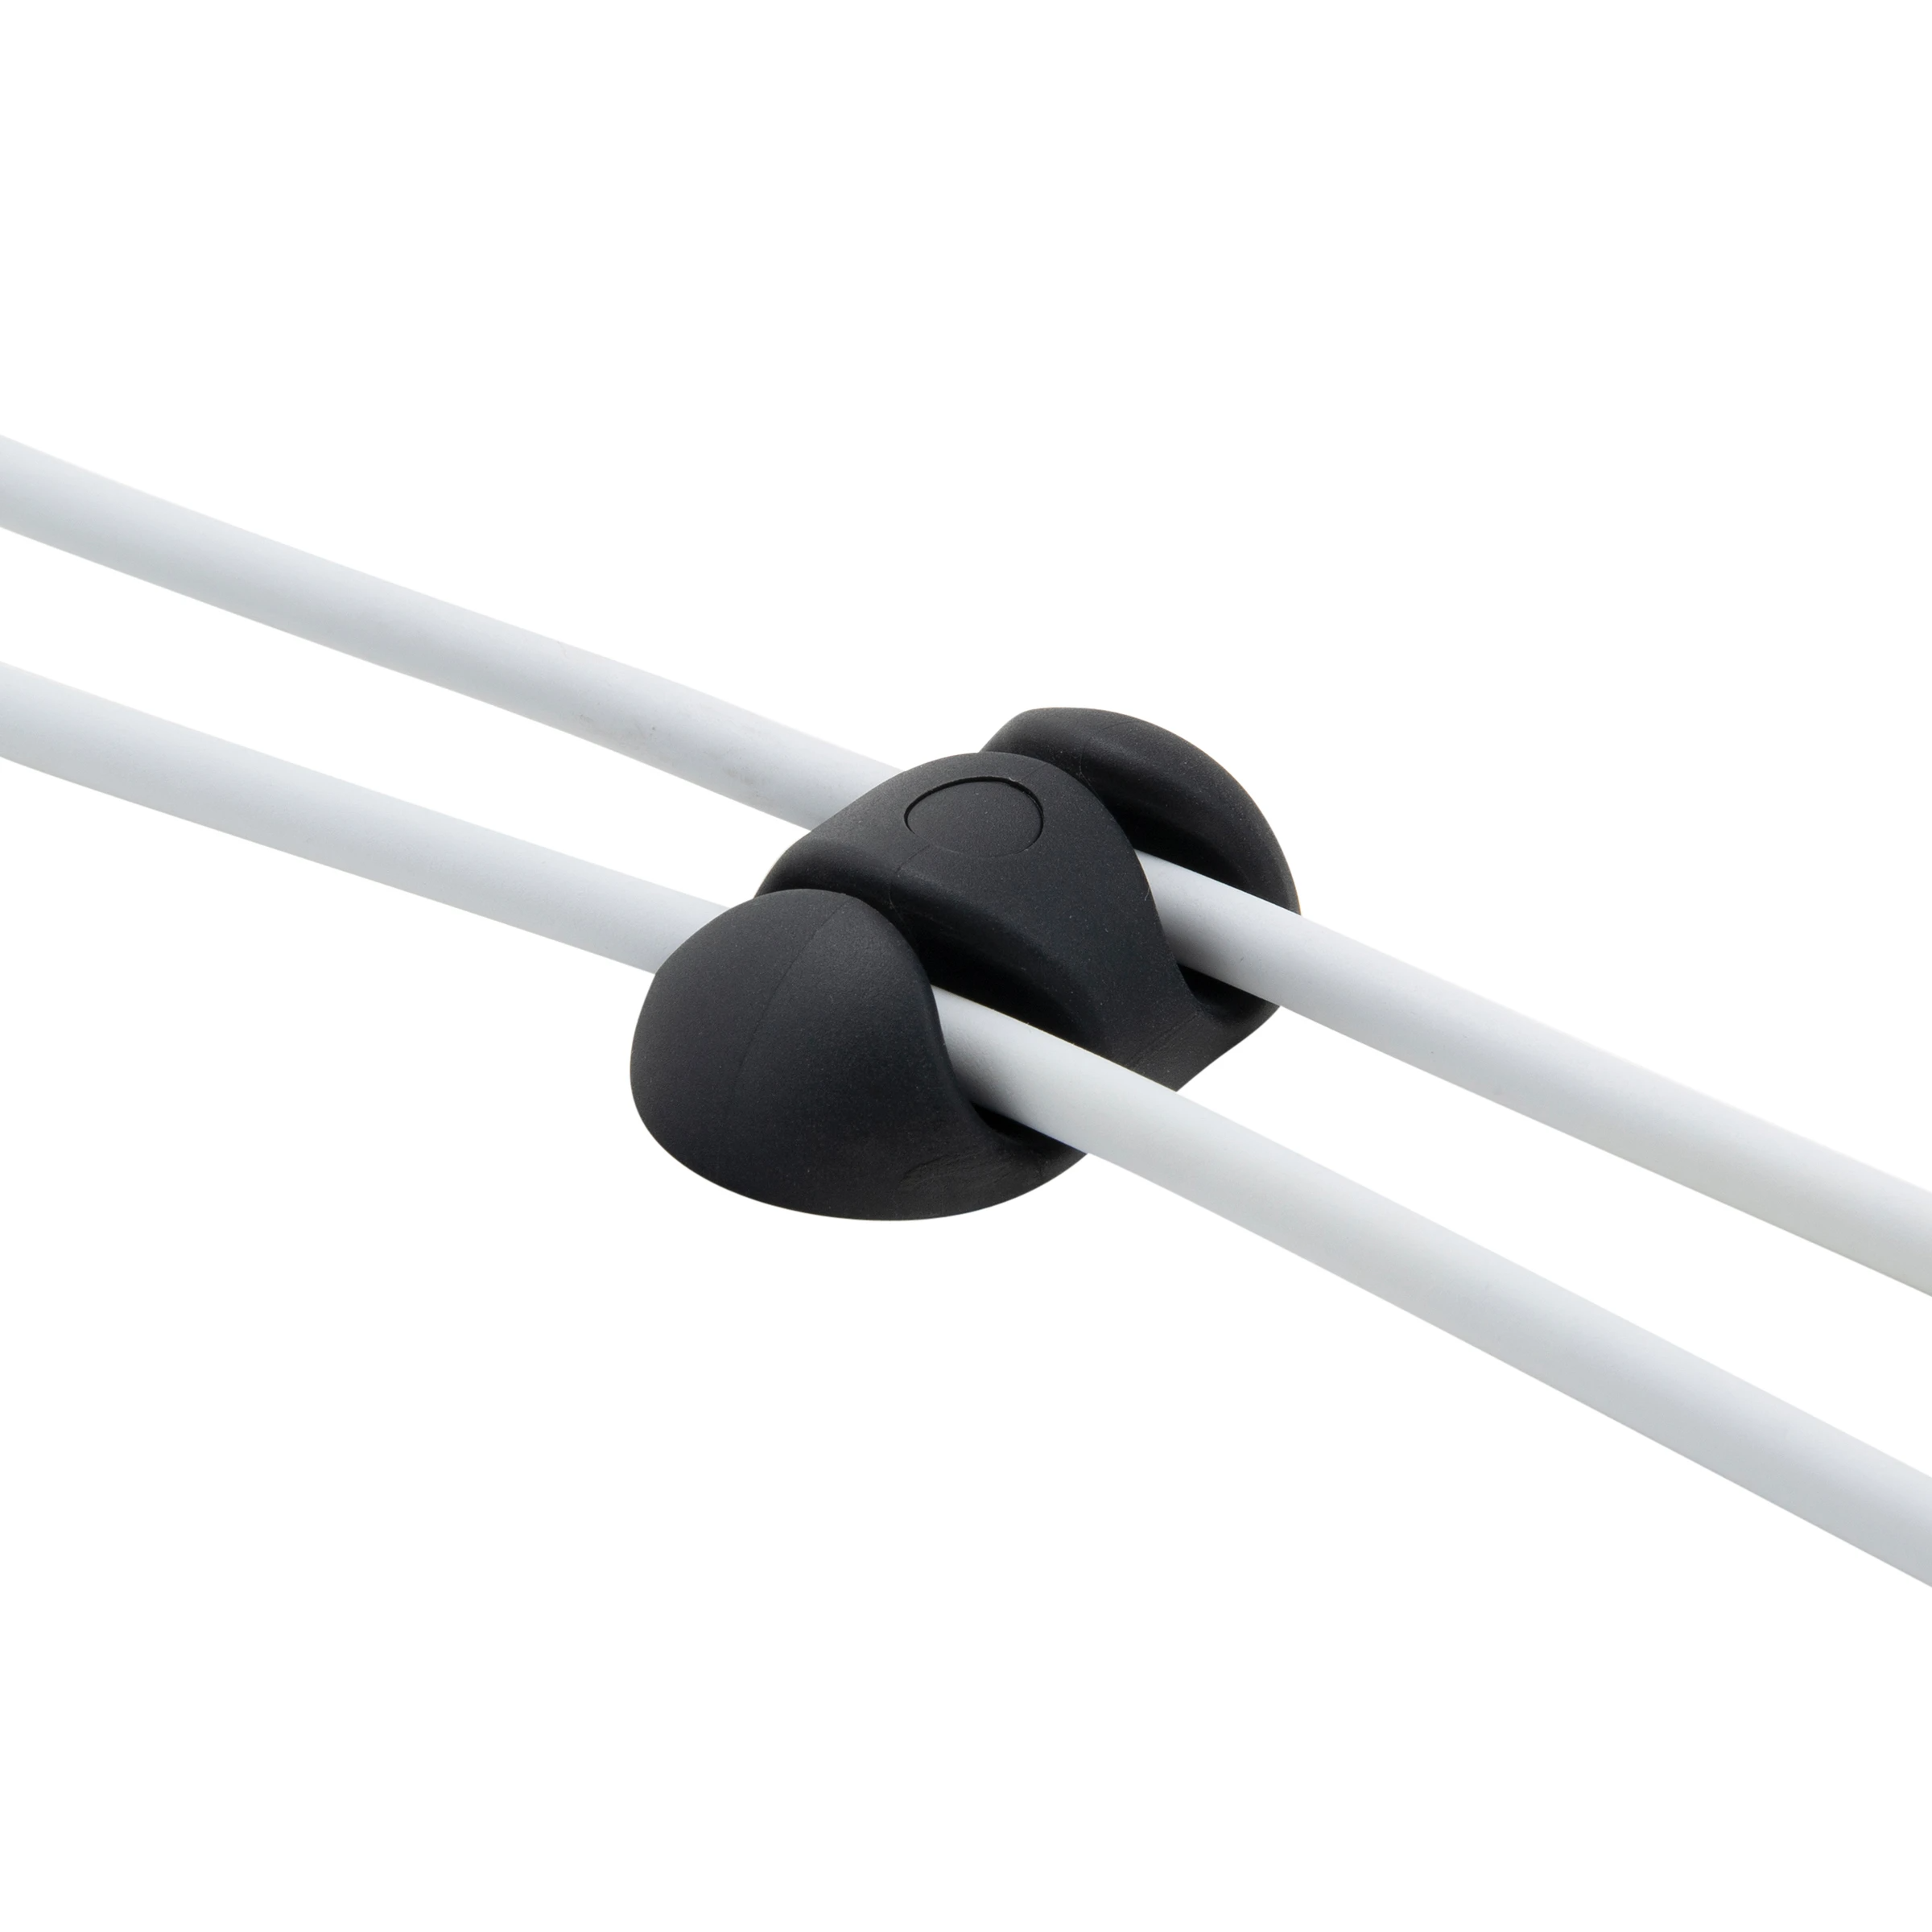 BlueLounge Cable Drop XL2 多重用途整線器【香港行貨】 - Five 1 Store